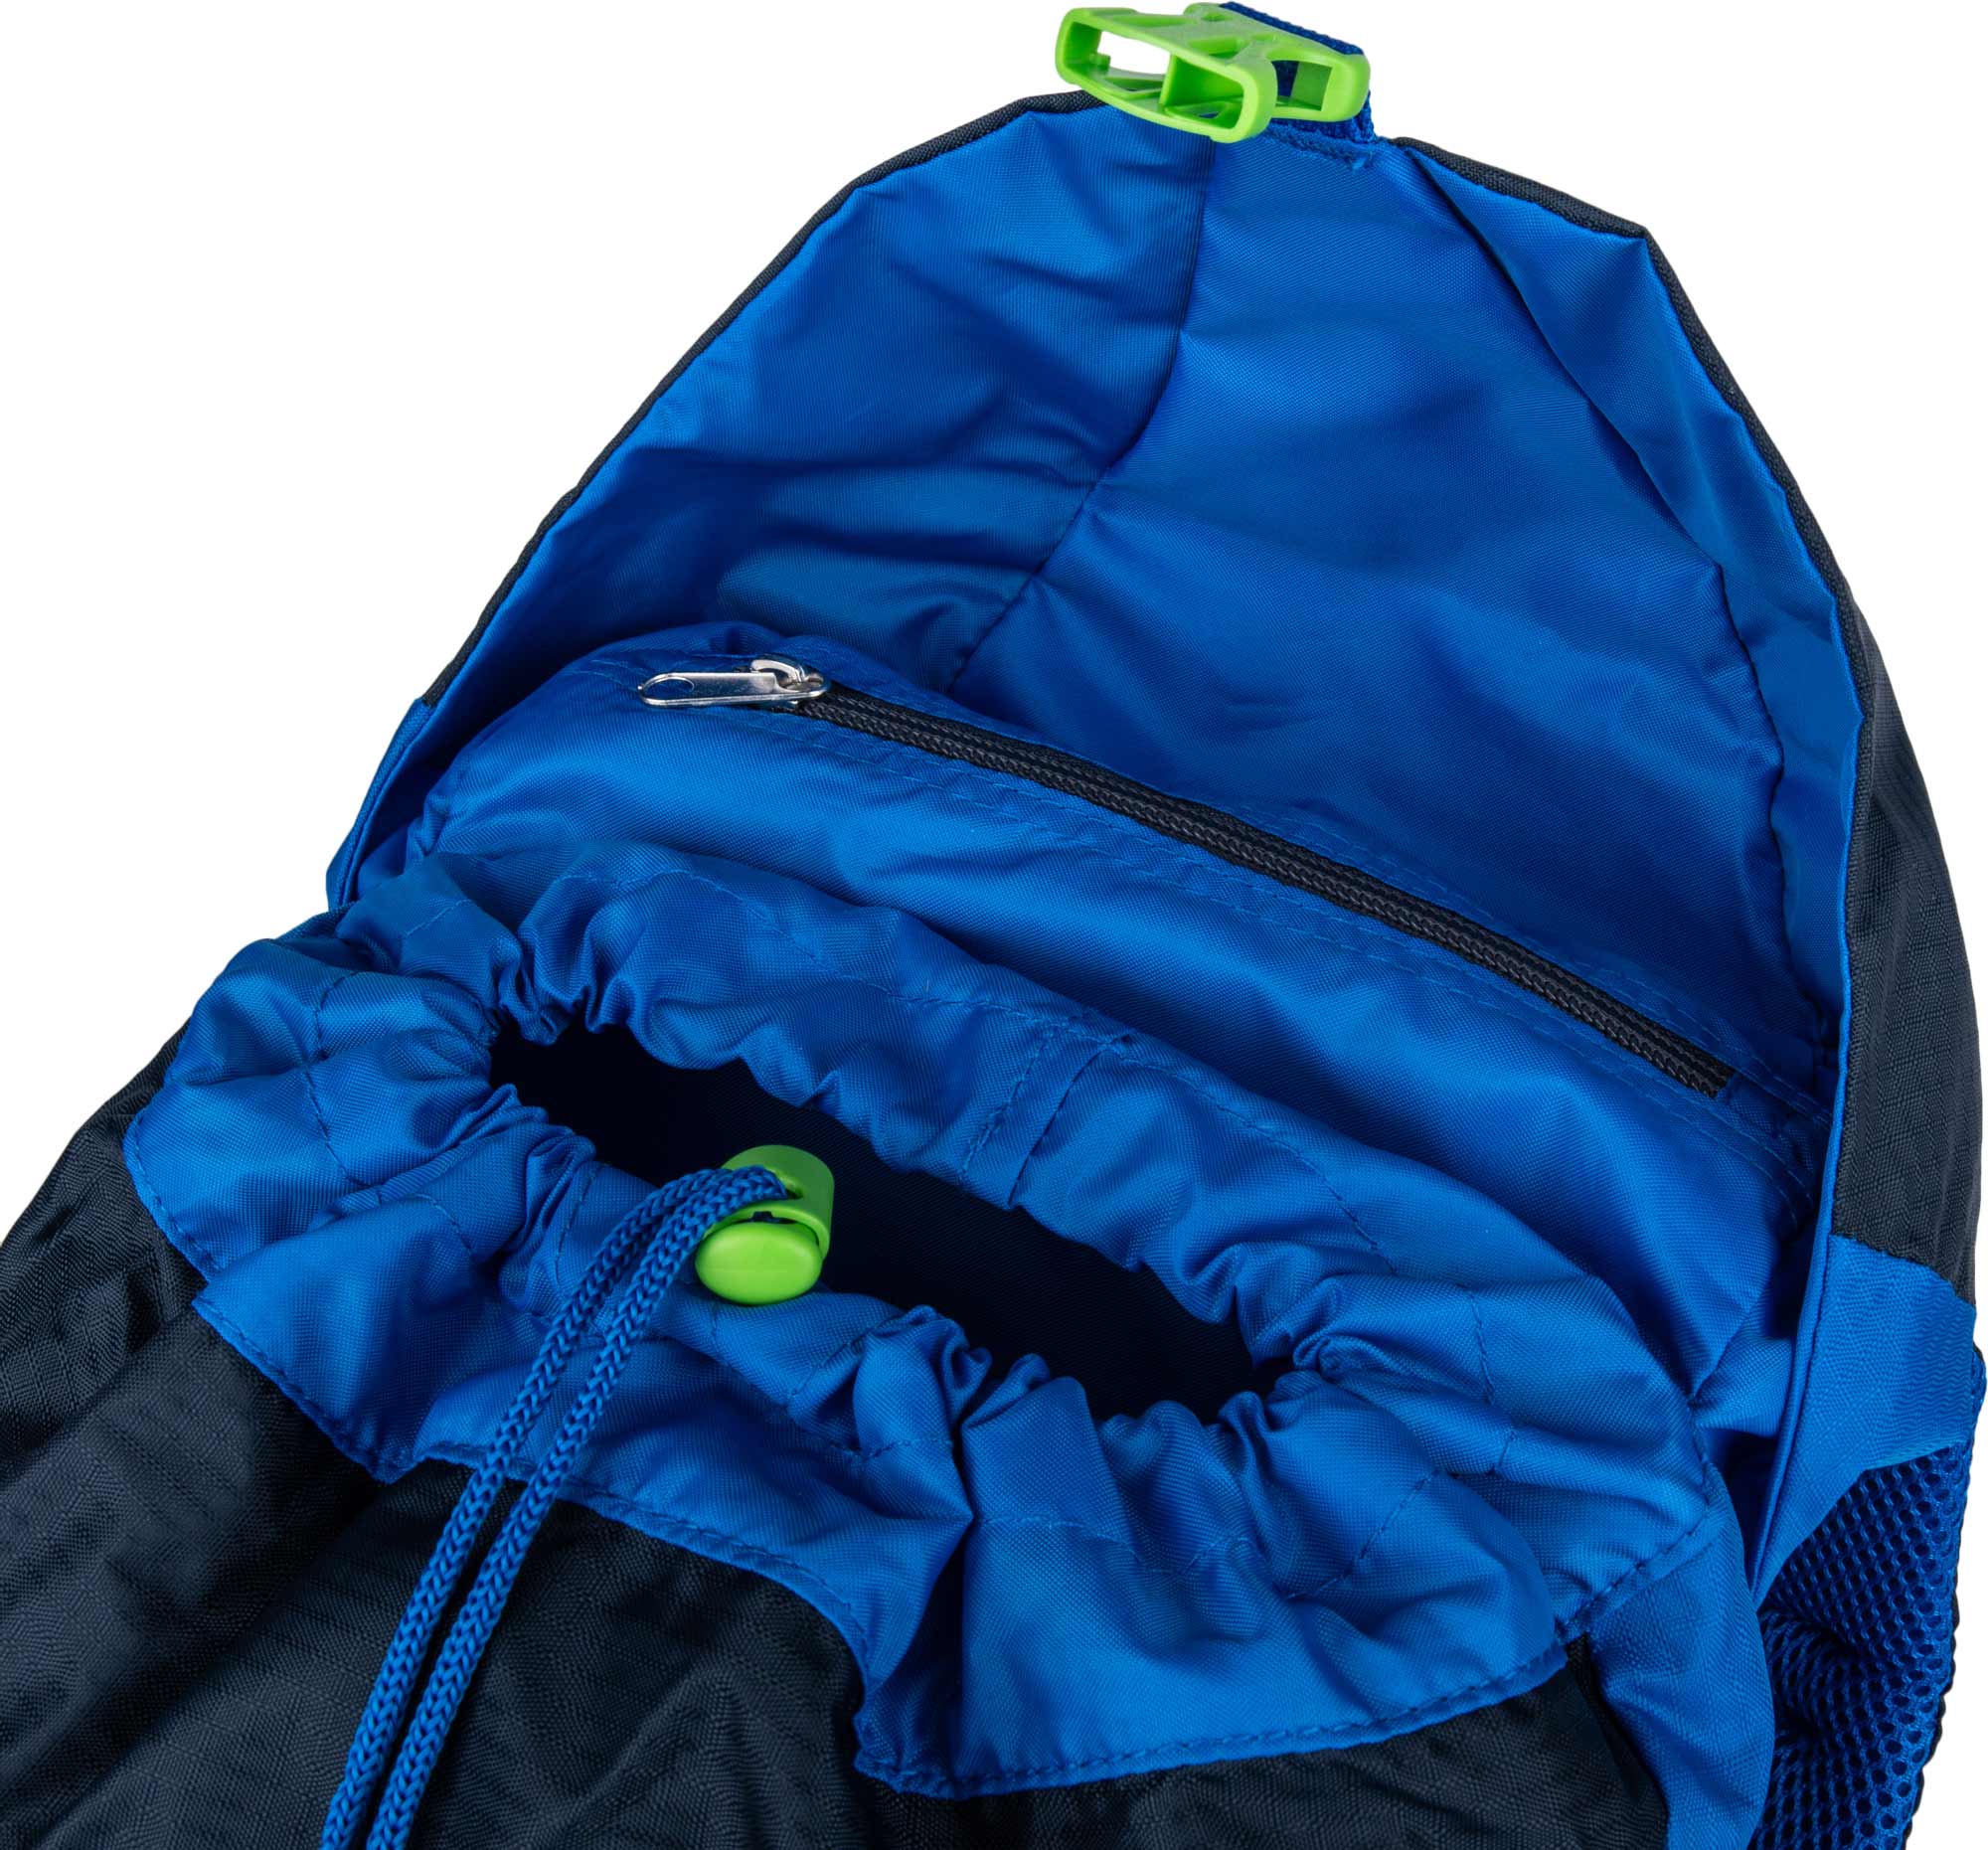 Universal children's backpack